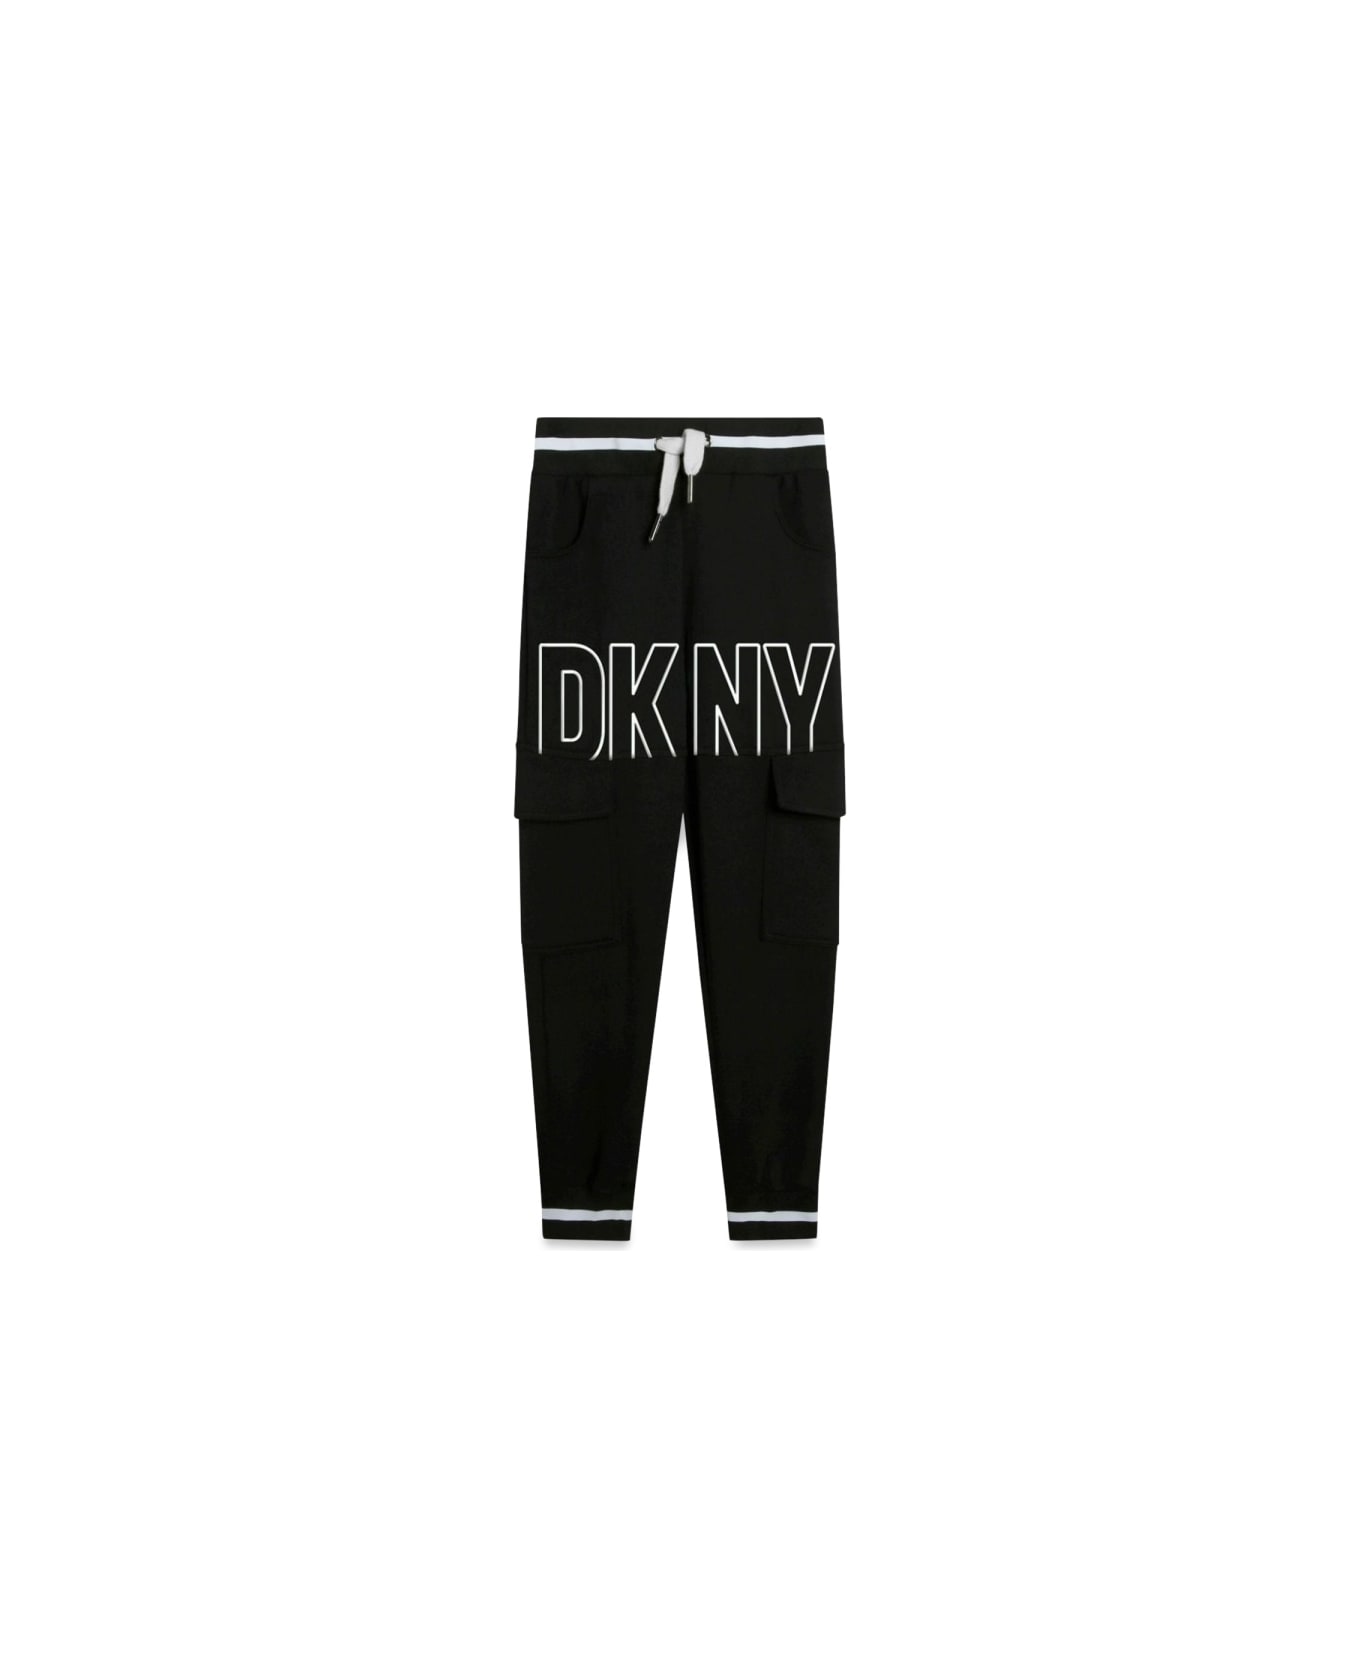 DKNY Pants - BLACK